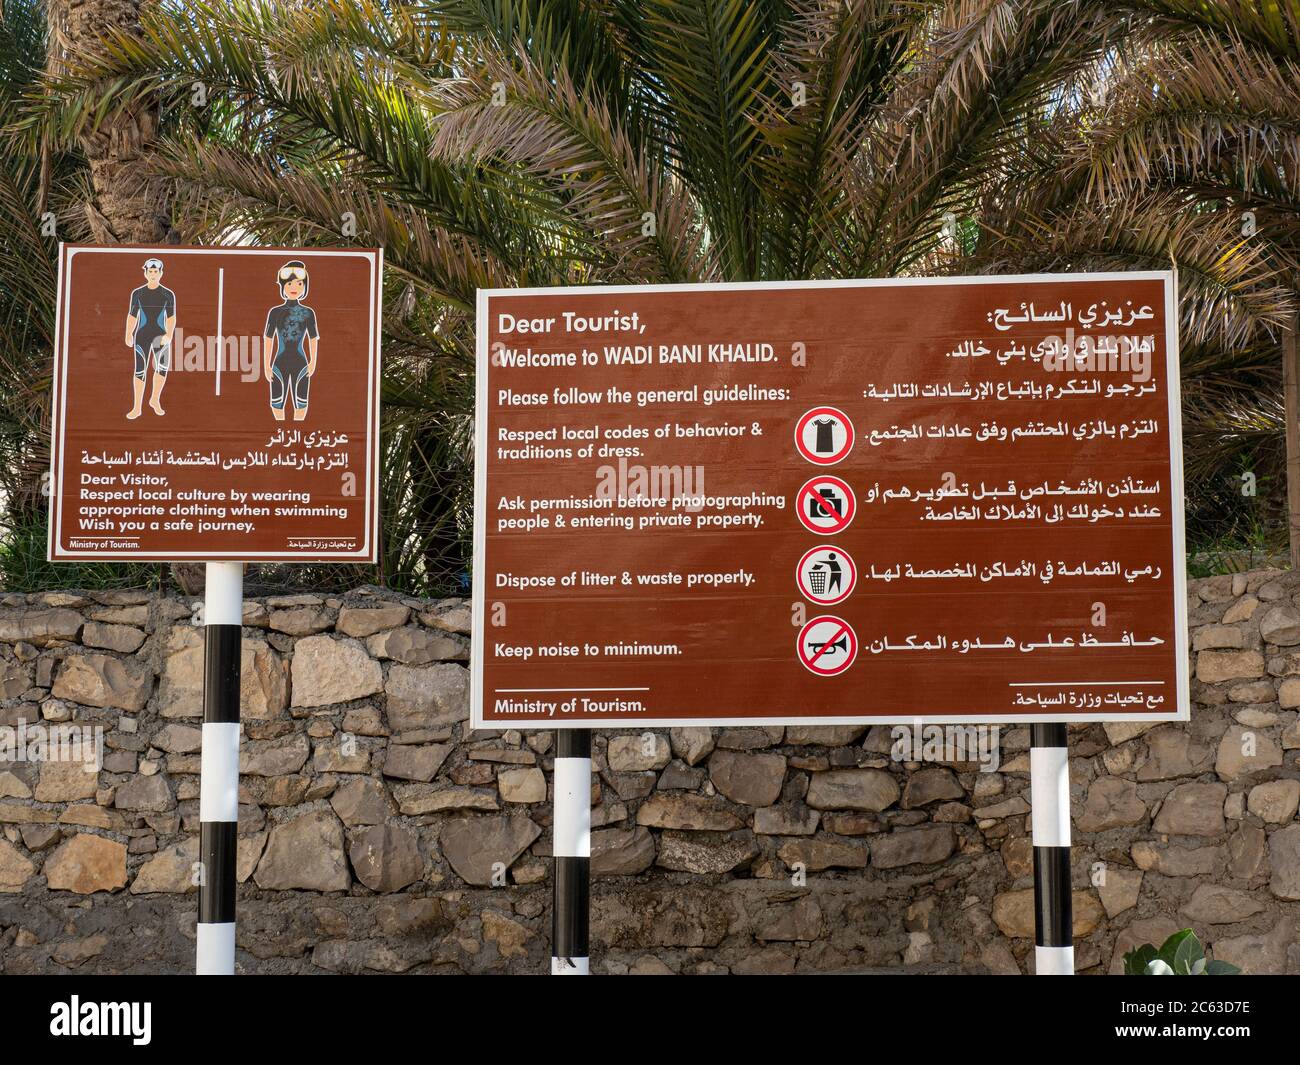 Panneaux touristiques affichés près des piscines formées par les eaux d'inondation à Wadi Bani Khalid, Sultanat d'Oman. Banque D'Images